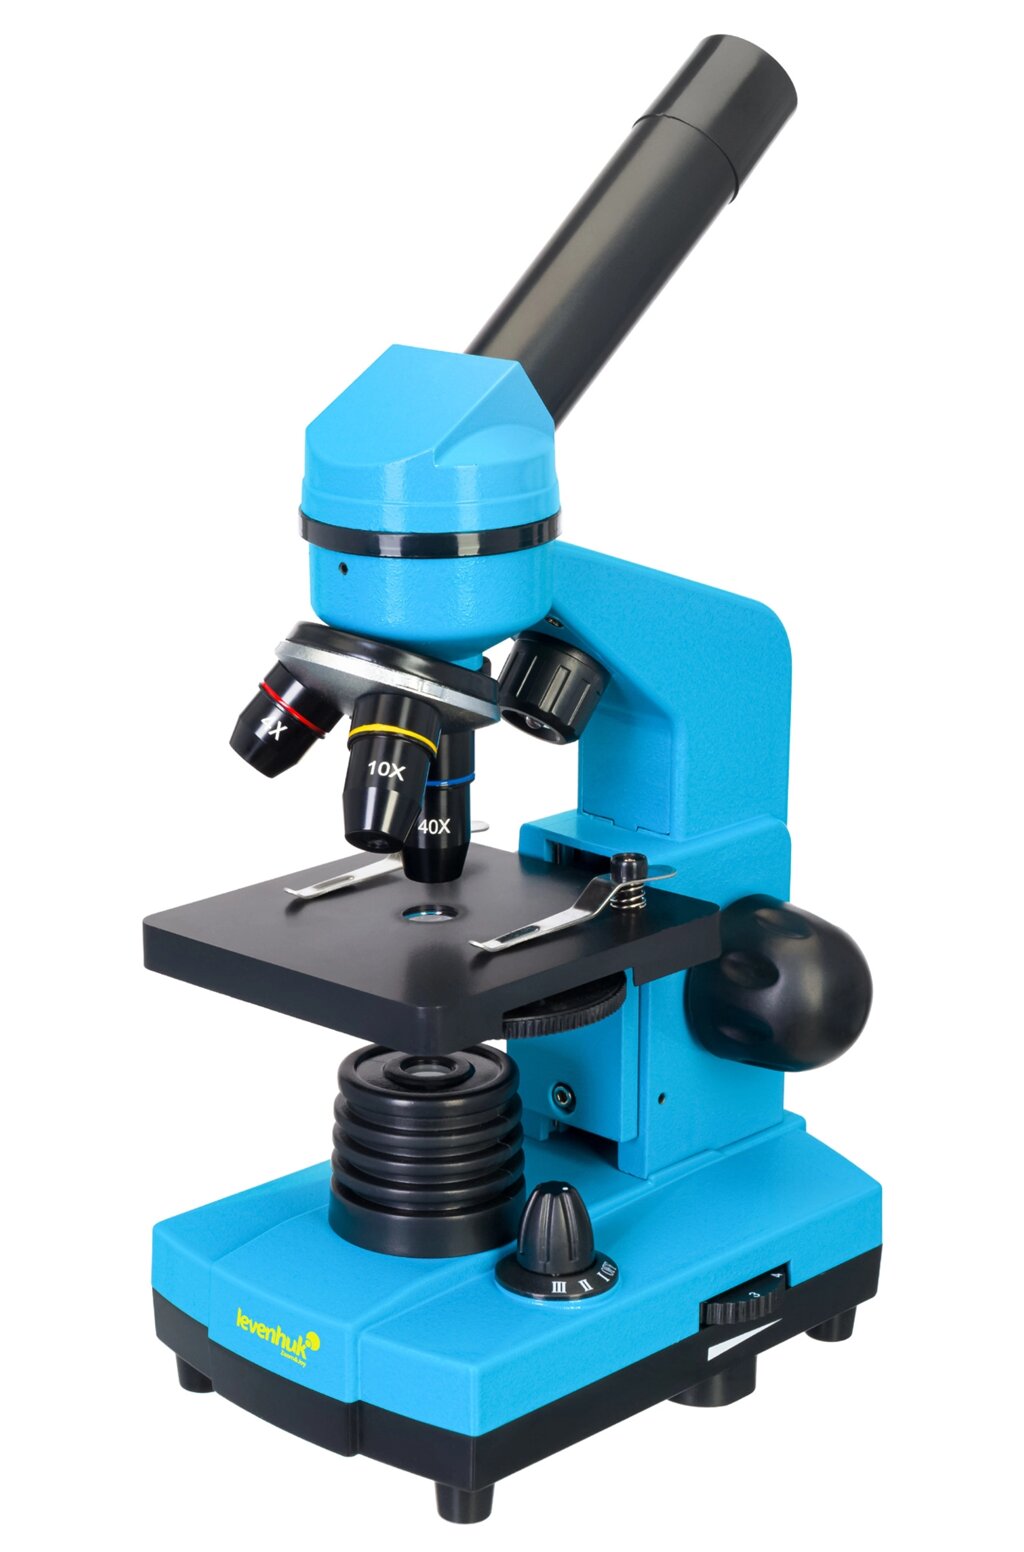 Микроскоп Levenhuk Rainbow 2L Azure\Лазурь от компании ООО "АССЕРВИС" лабораторное оборудование и весы по низким ценам. - фото 1